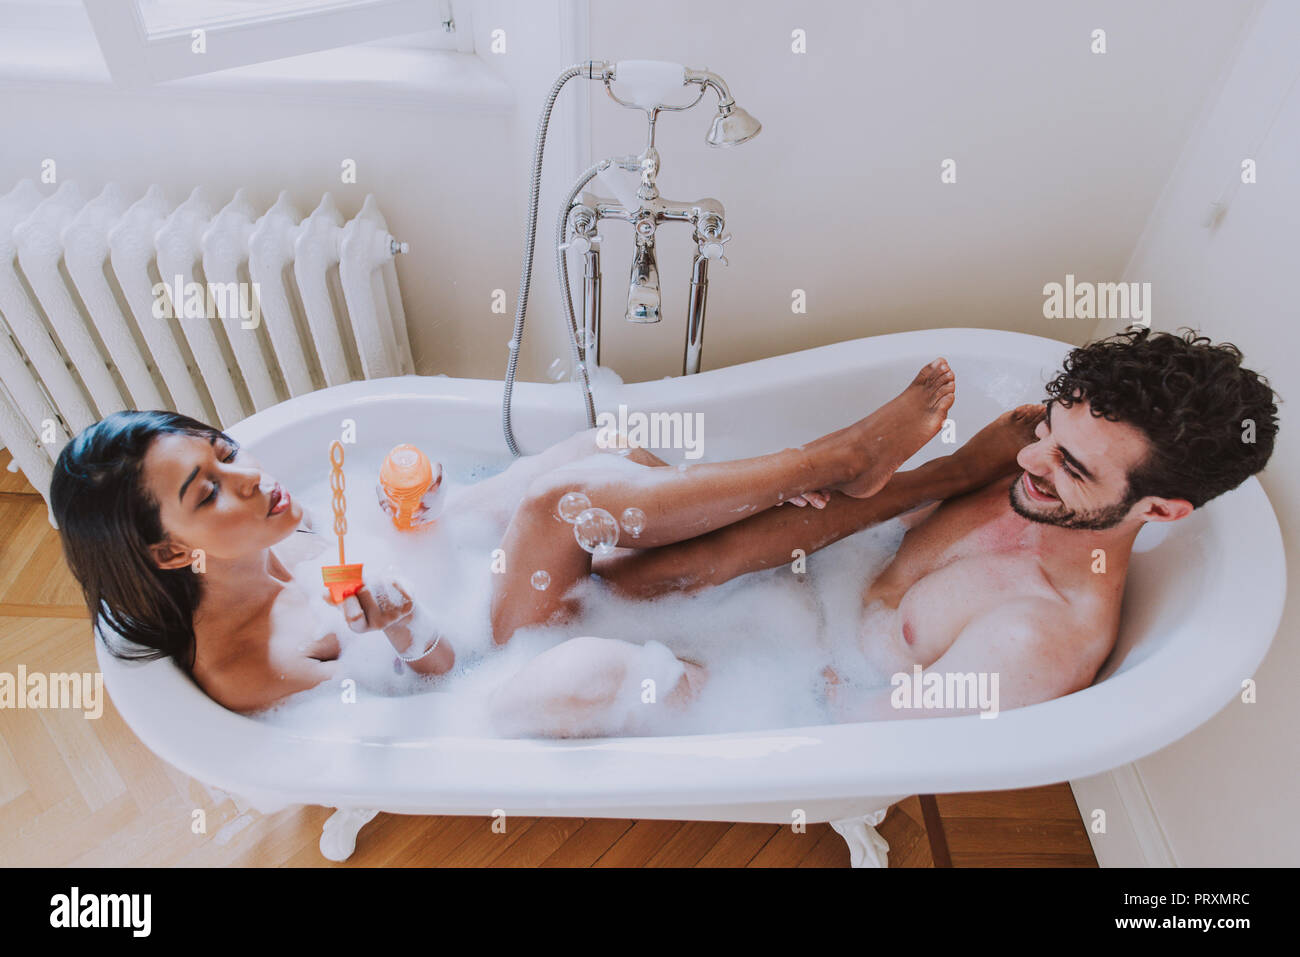 Angelina Diamanti и Evelin Stone принимают ванну вдвоем